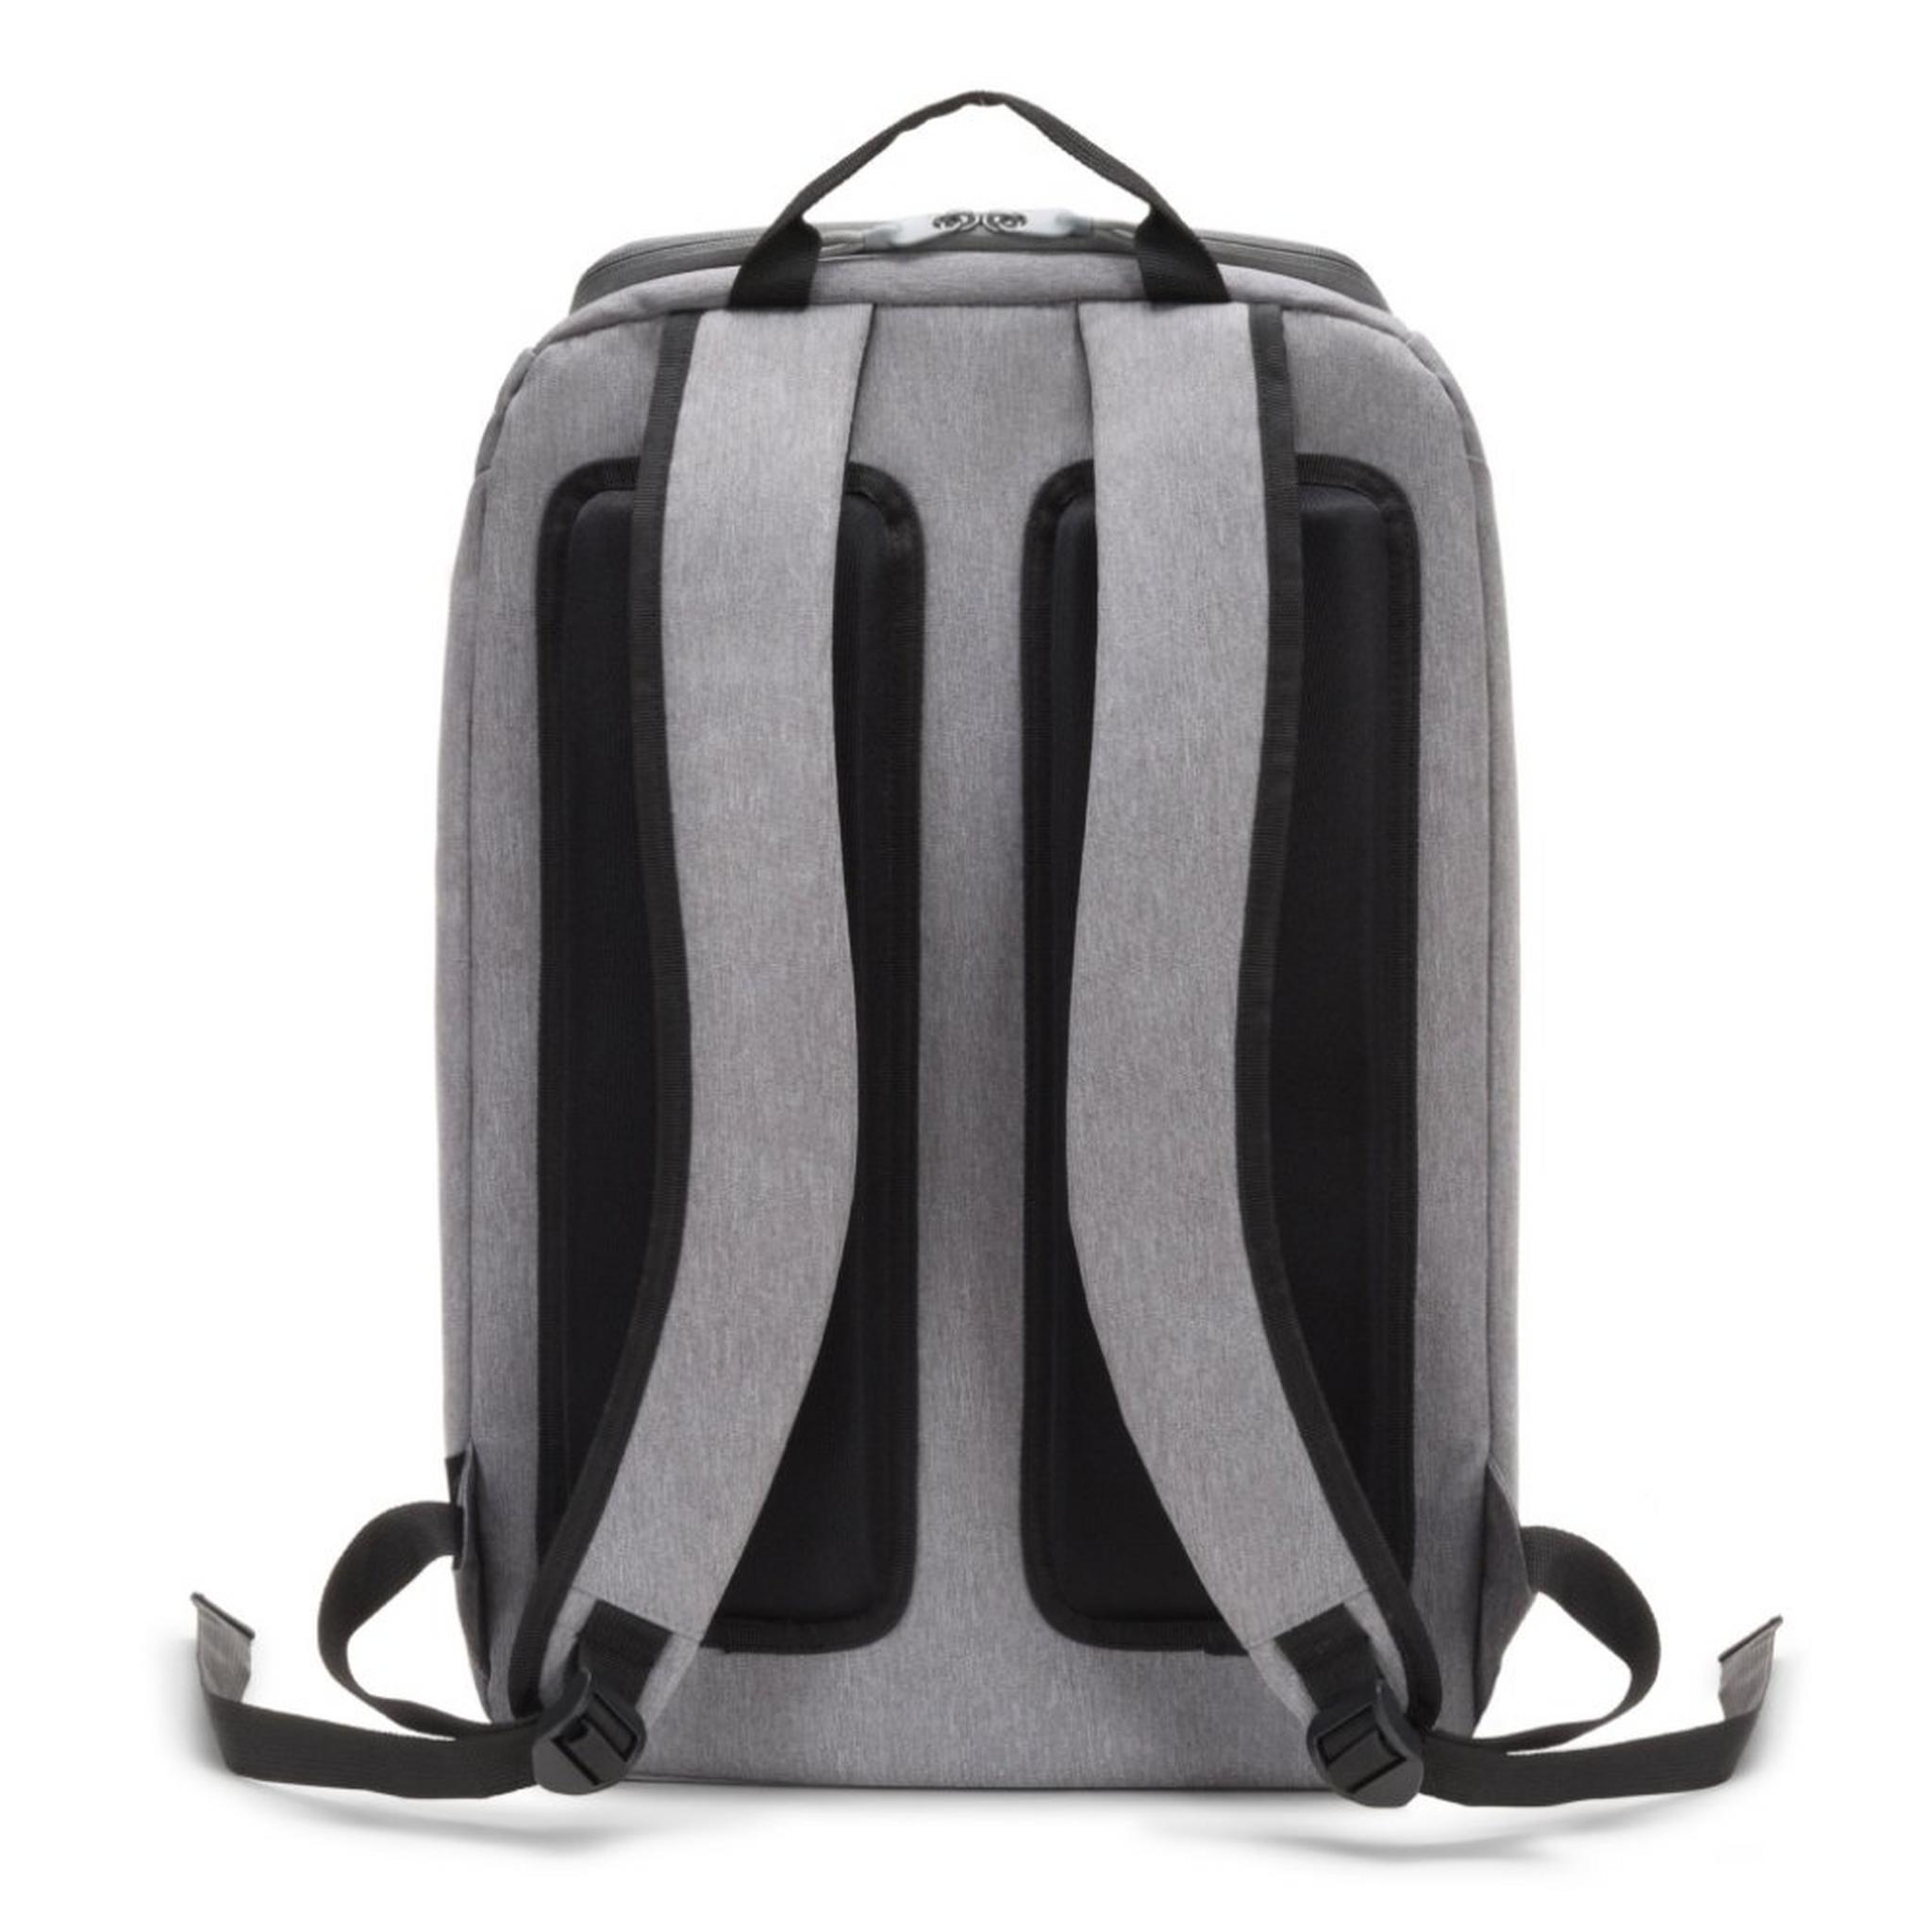 حقيبة الظهر ايكو موشن للابتوب بحجم 15.6 بوصة من ديكوتا - رمادي